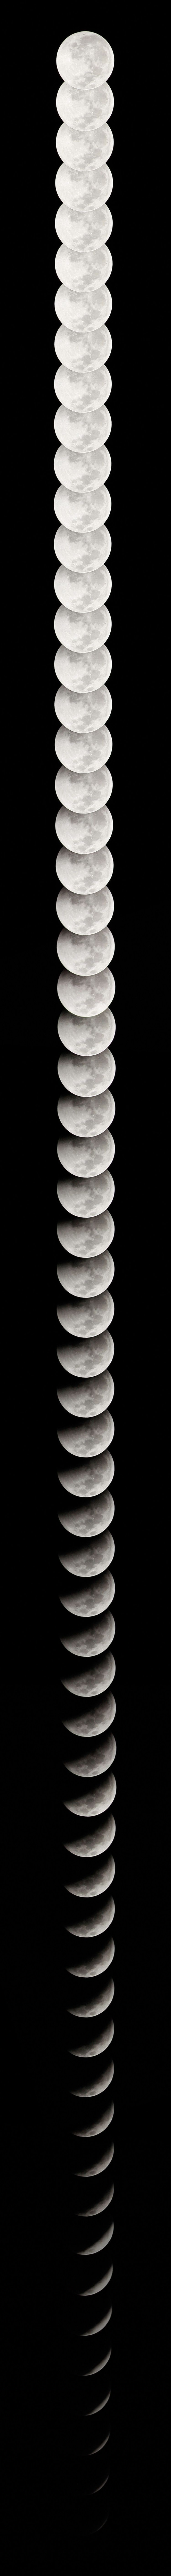 December 21st, 2010 Lunar eclipse – Moon